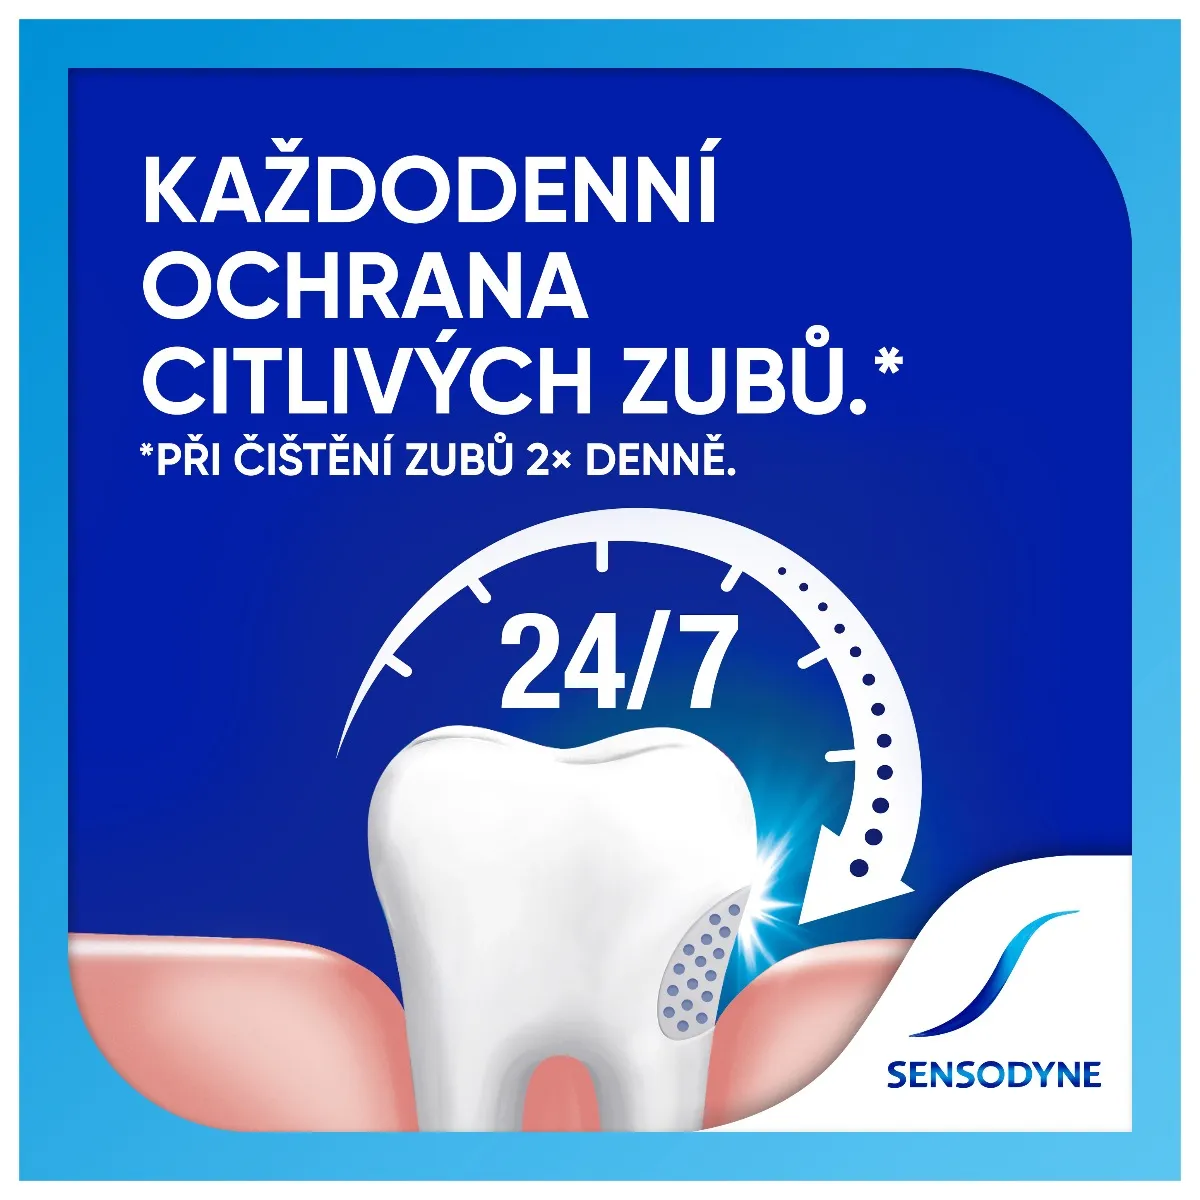 Sensodyne Fluoride zubní pasta 2x75 ml